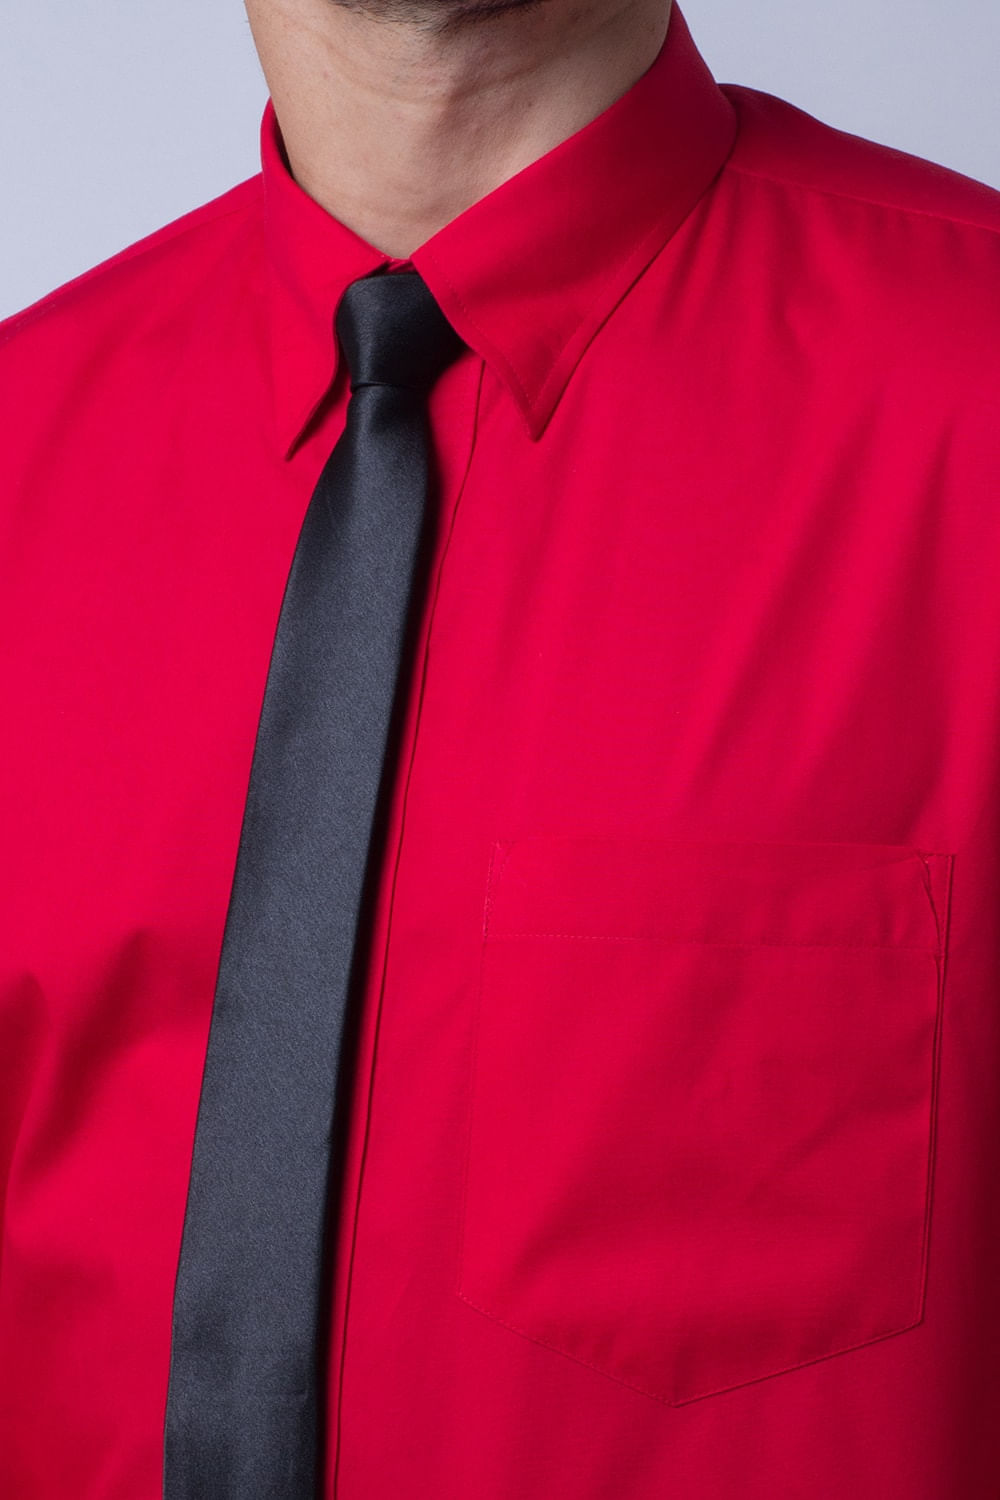 camisa social masculina com gravata